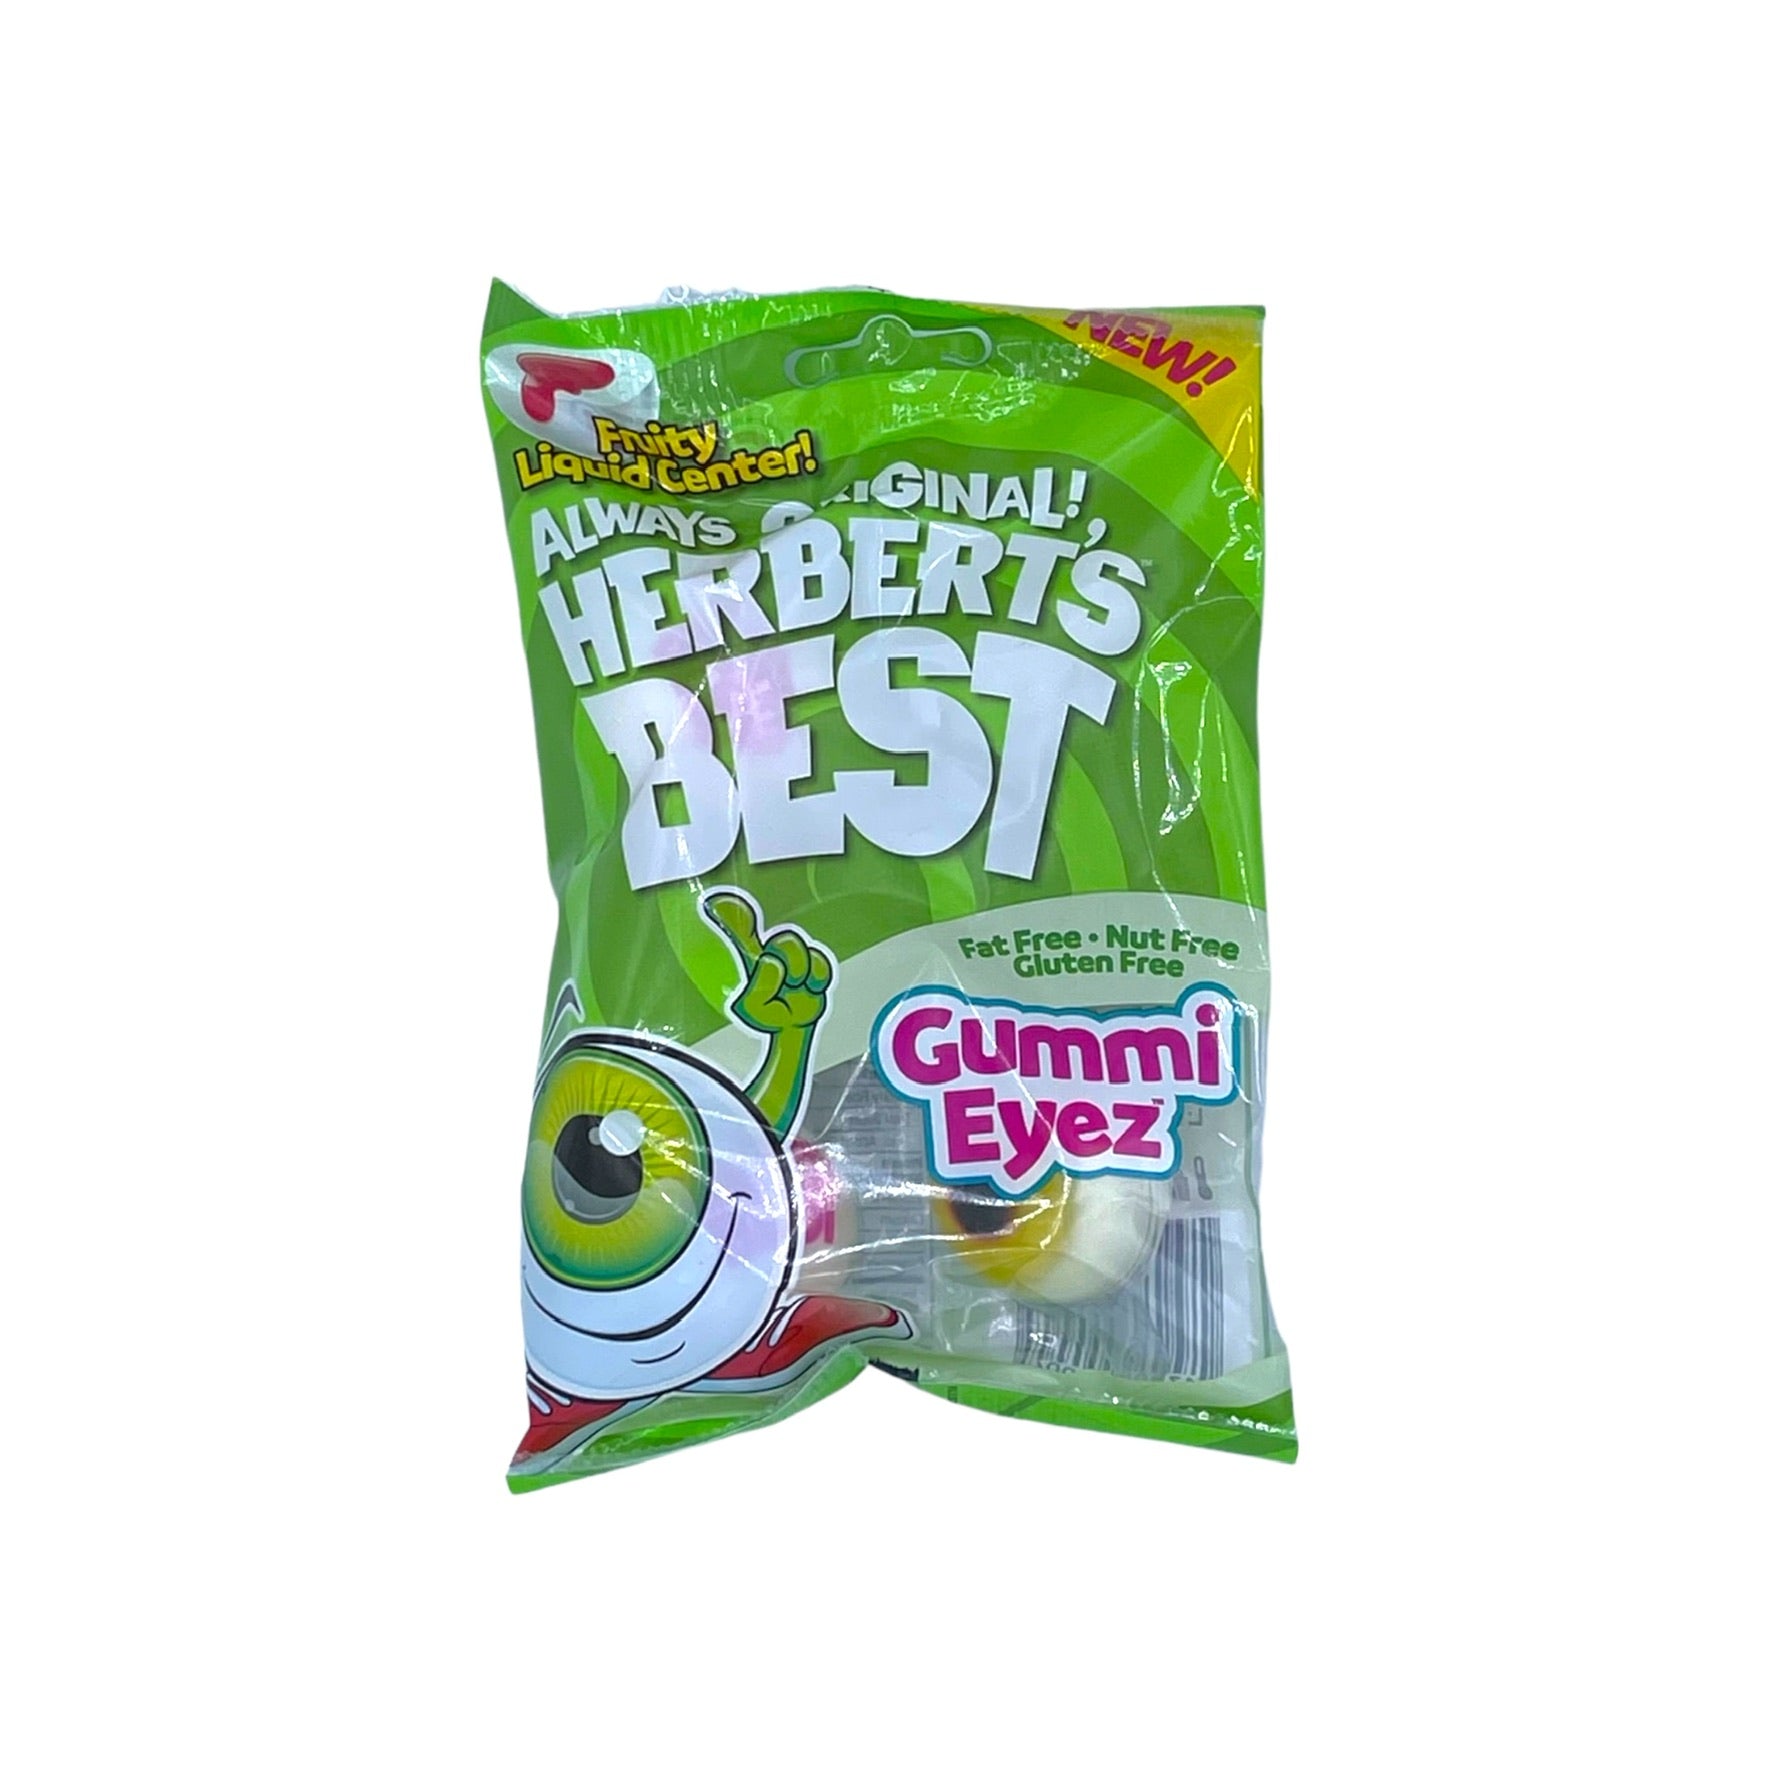 Herbert’s Best Gummie Eyez